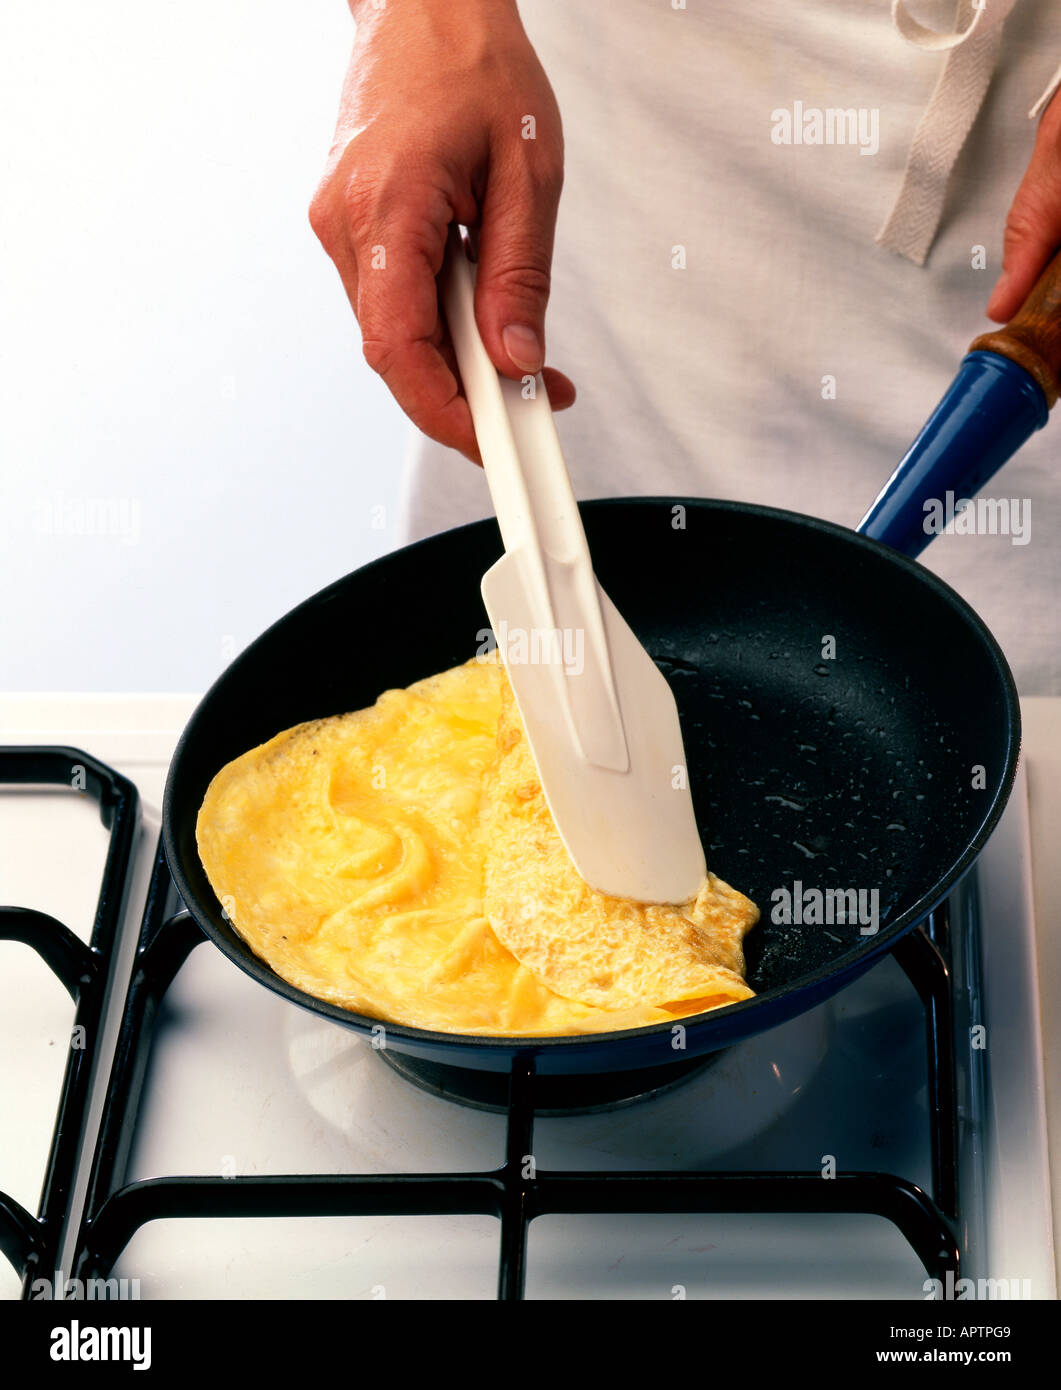 Making omelettes - folding over plain omelette using a large